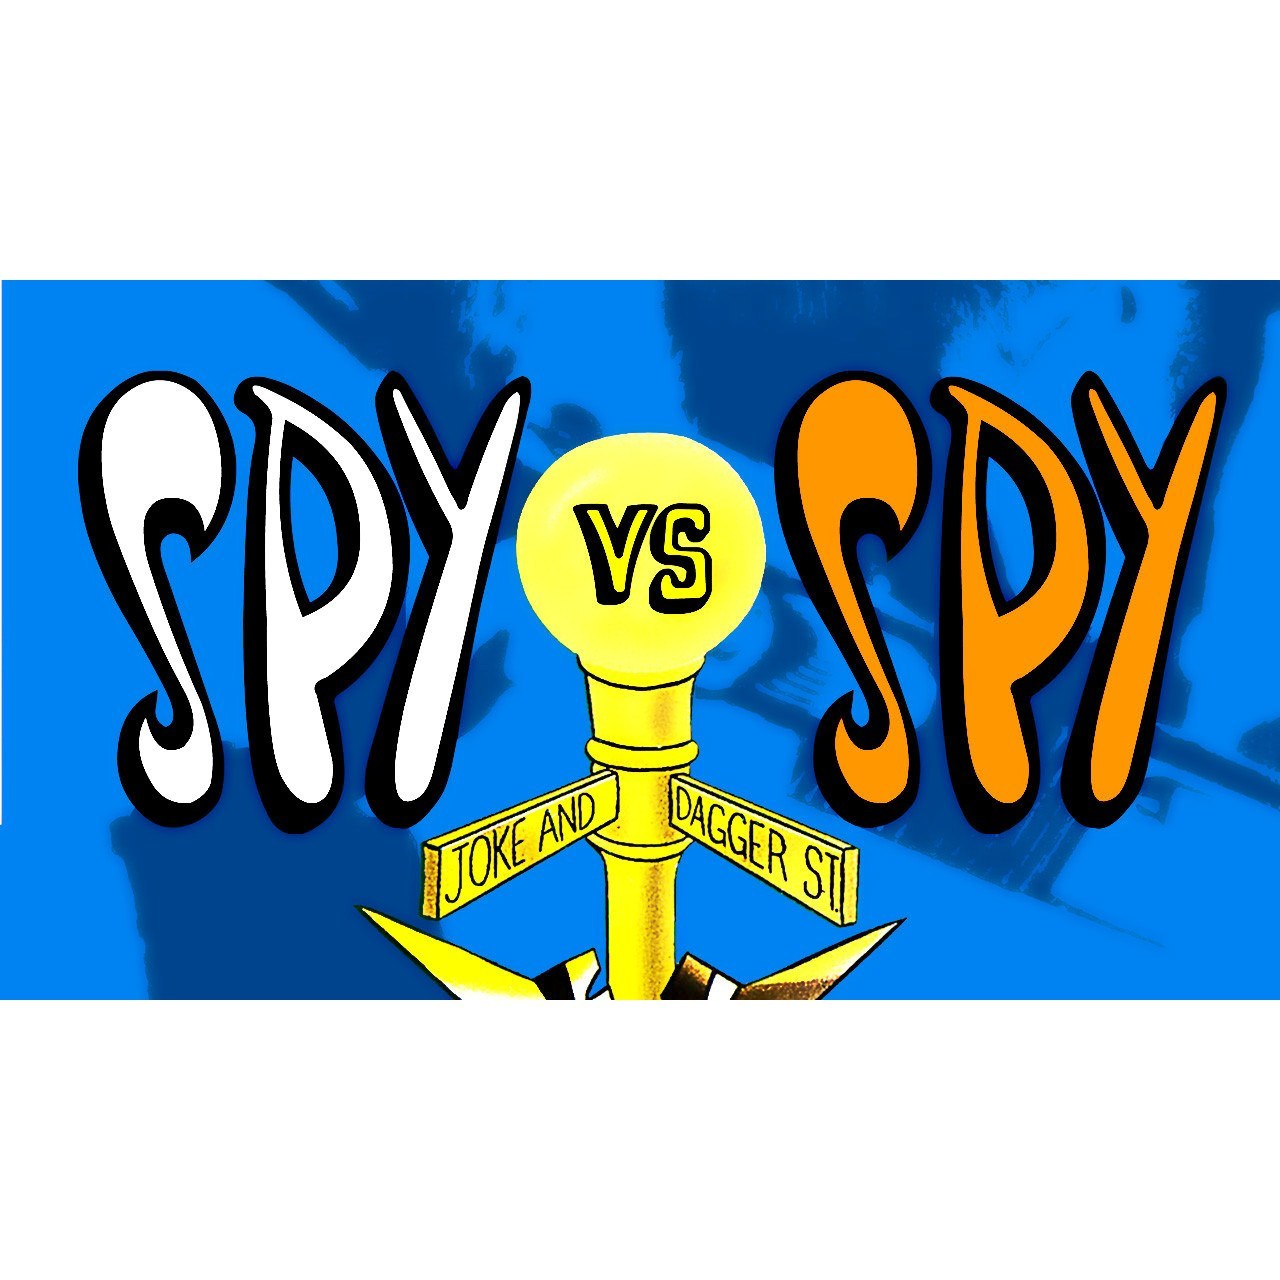 Spy vs Spy NES Nintendo Game